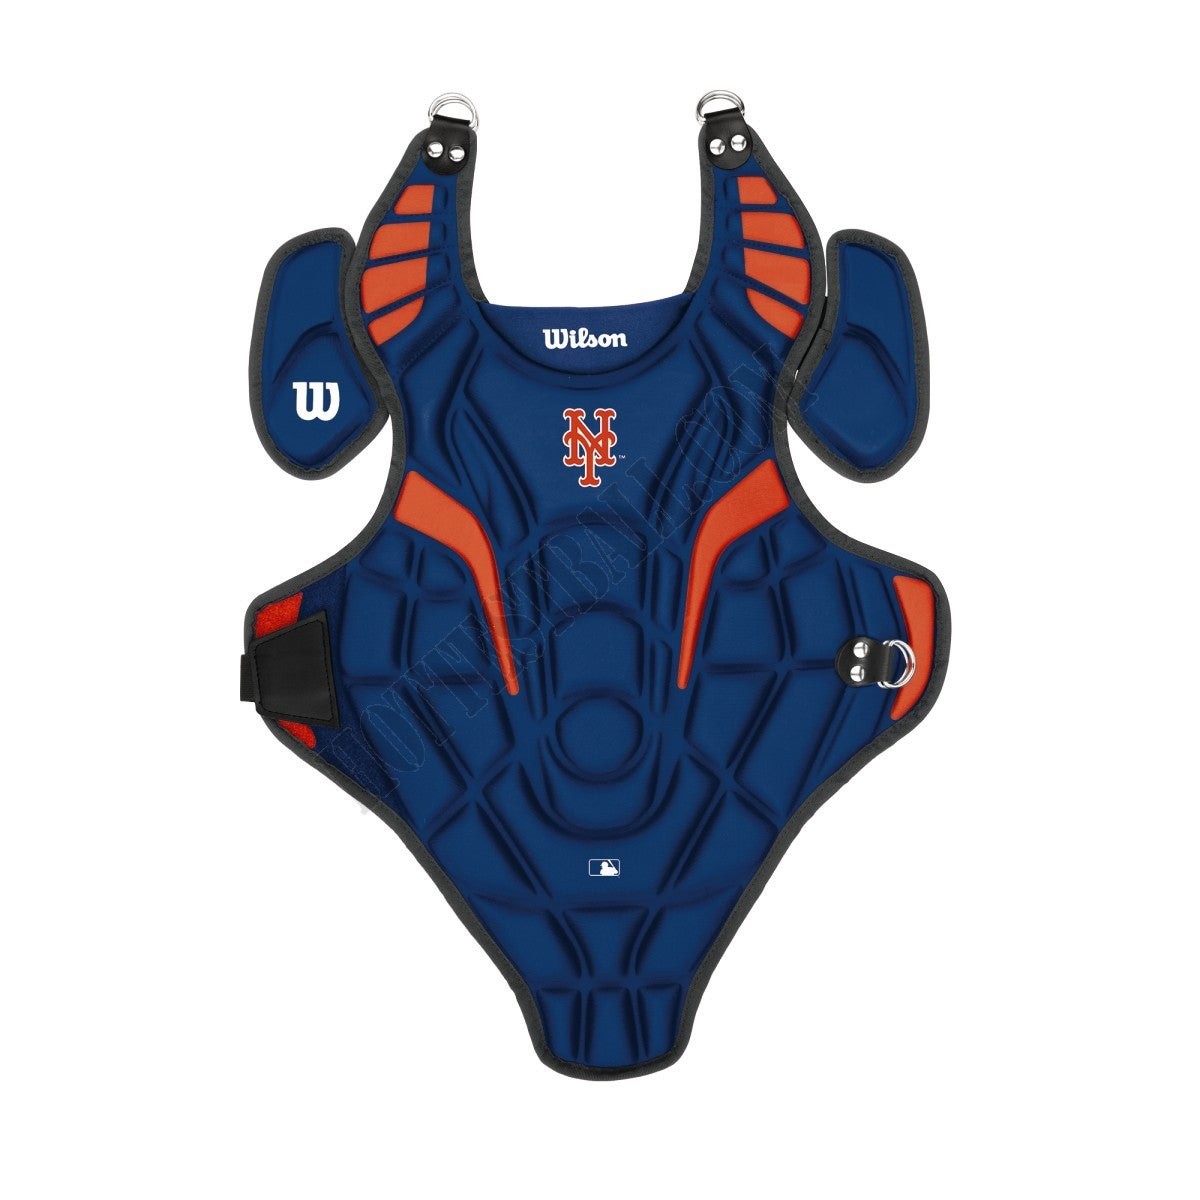 EZ Gear Catcher's Kit - New York Mets - Wilson Discount Store - EZ Gear Catcher's Kit - New York Mets - Wilson Discount Store